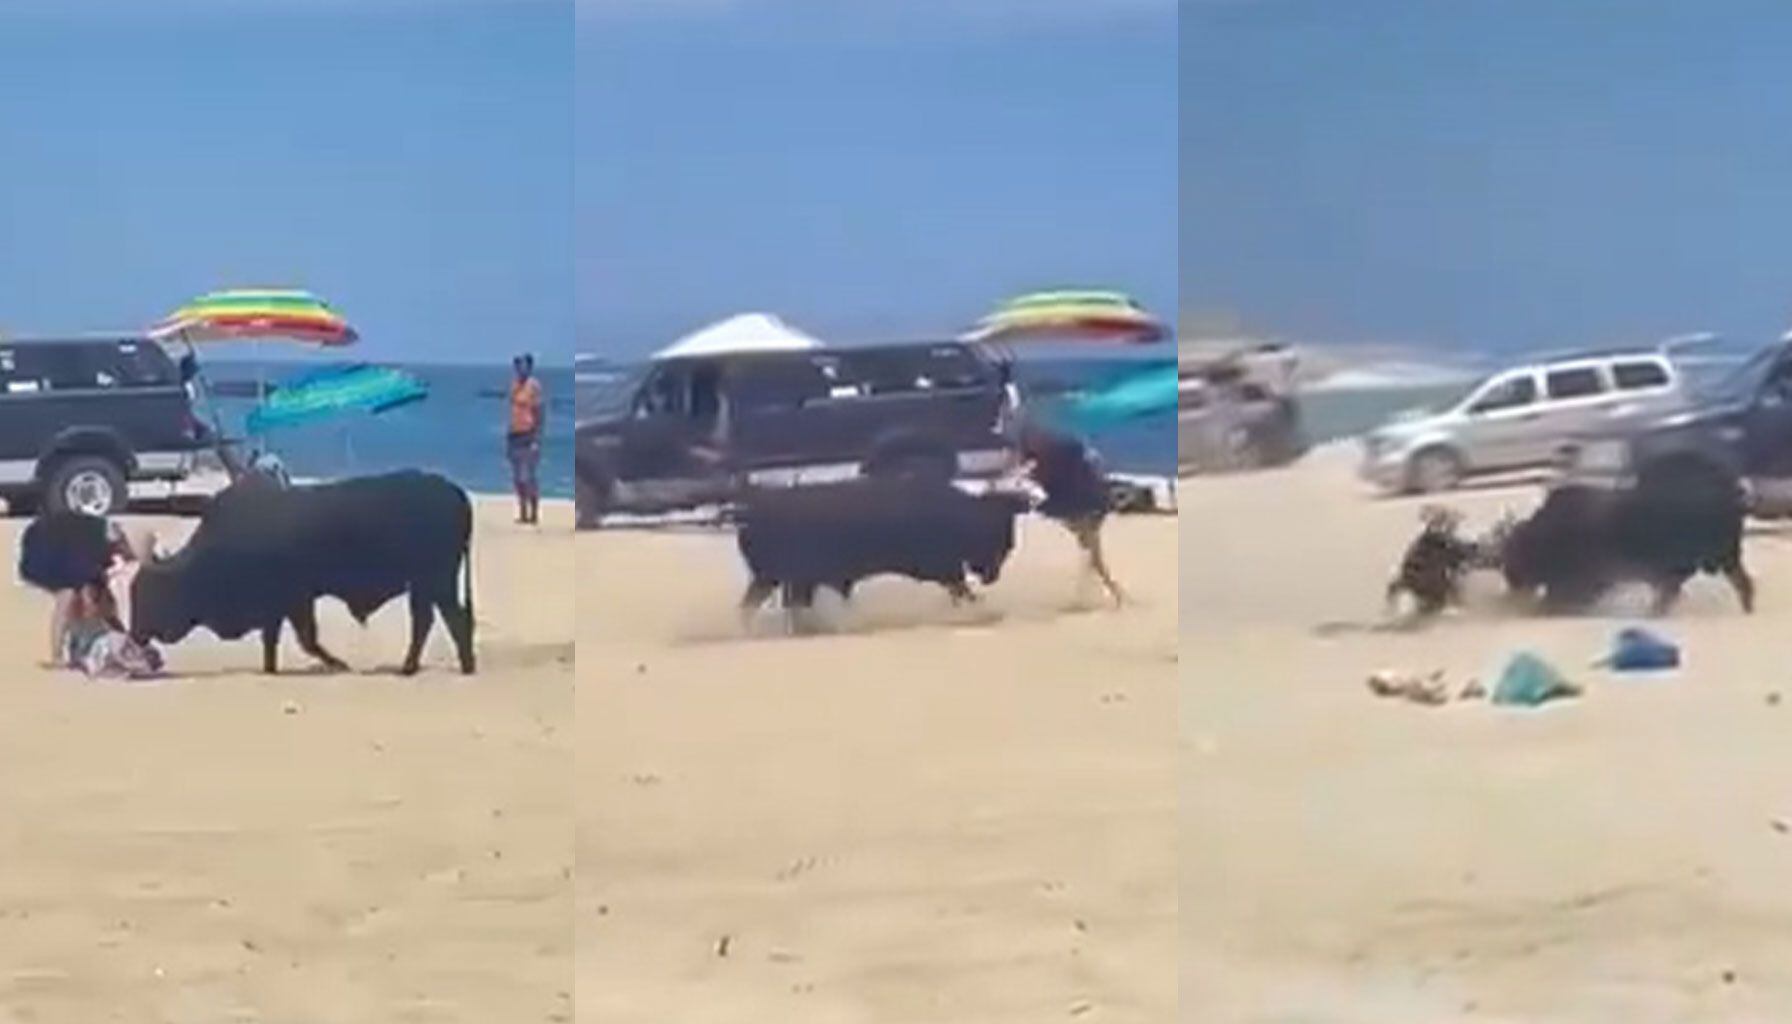 Toro embiste a una mujer en la playa La Fortuna, Los Cabos, en un preocupante incidente capturado en video que subraya la necesidad de gestionar mejor la presencia de ganado en zonas turísticas.